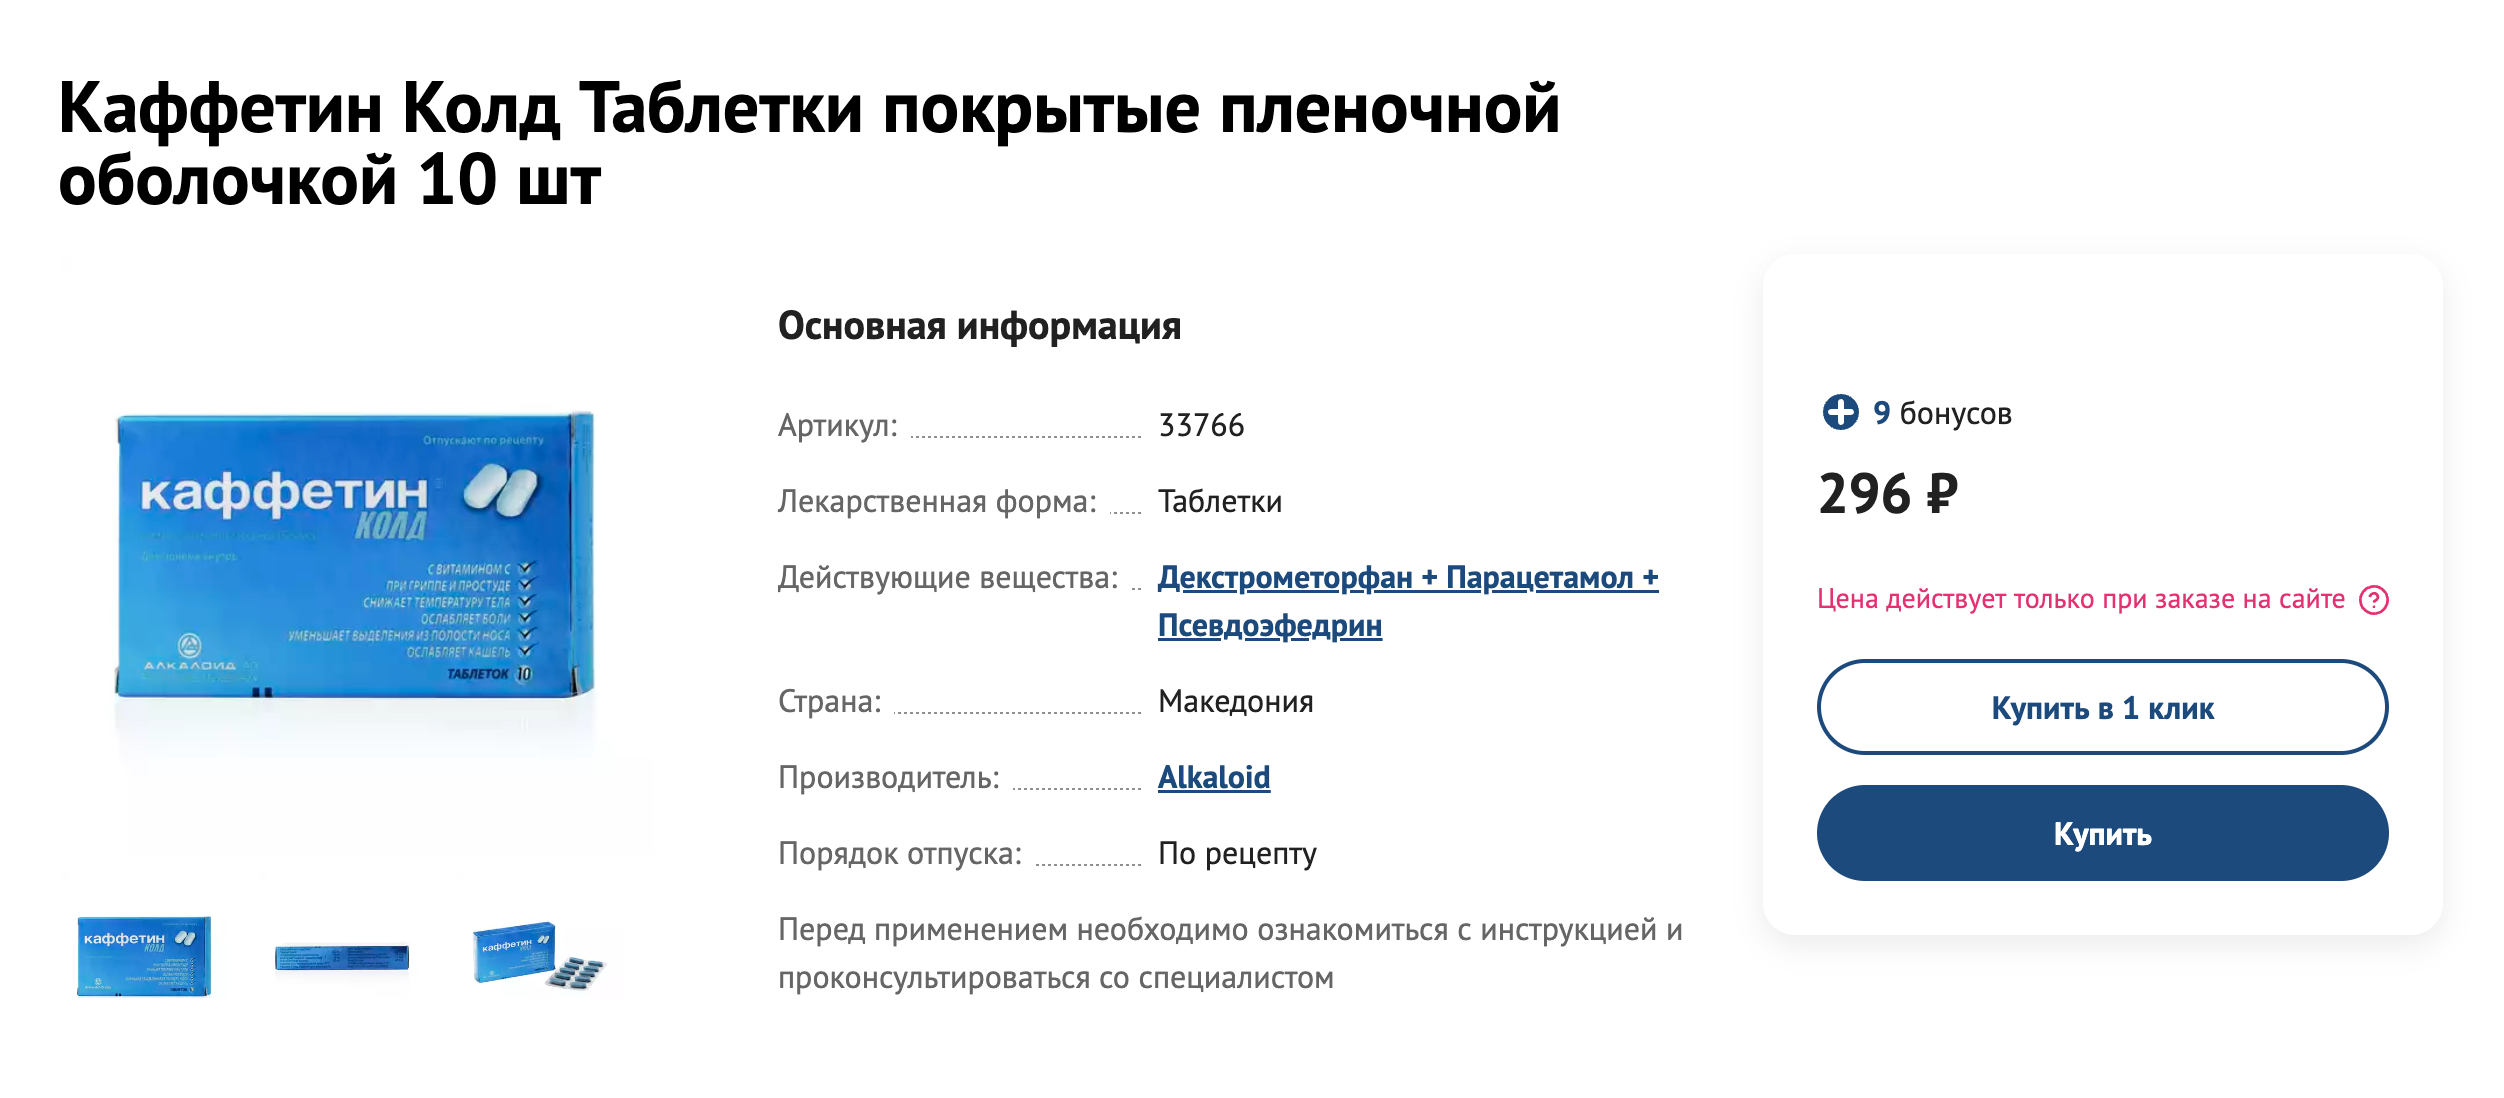 В России продают только комбинированные препараты с декстрометорфаном. Источник: 366.ru